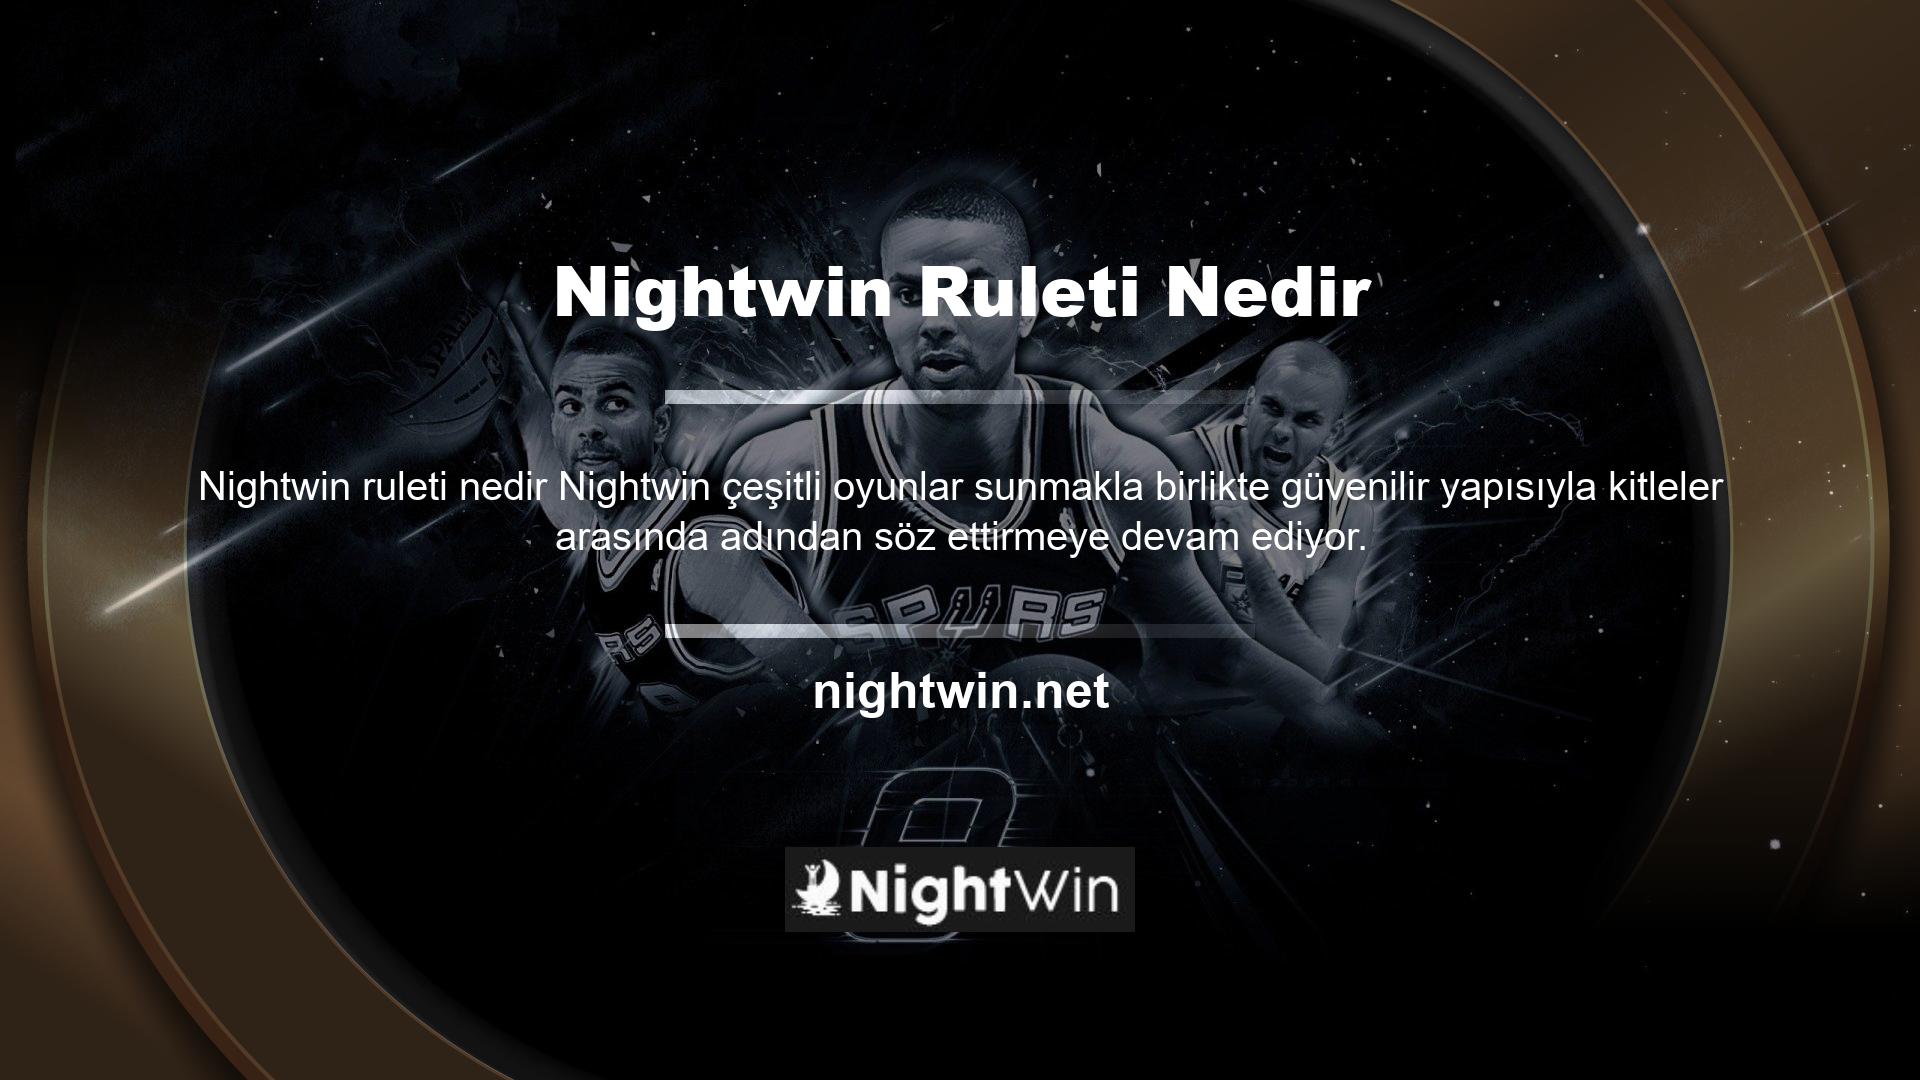 Avrupa'nın önemli ülkelerine hizmet veren ve Türkiye'de de oldukça aktif bir müşteri kitlesine sahip olan Nightwin, rulet oyununu eğlenceye dönüştürüyor